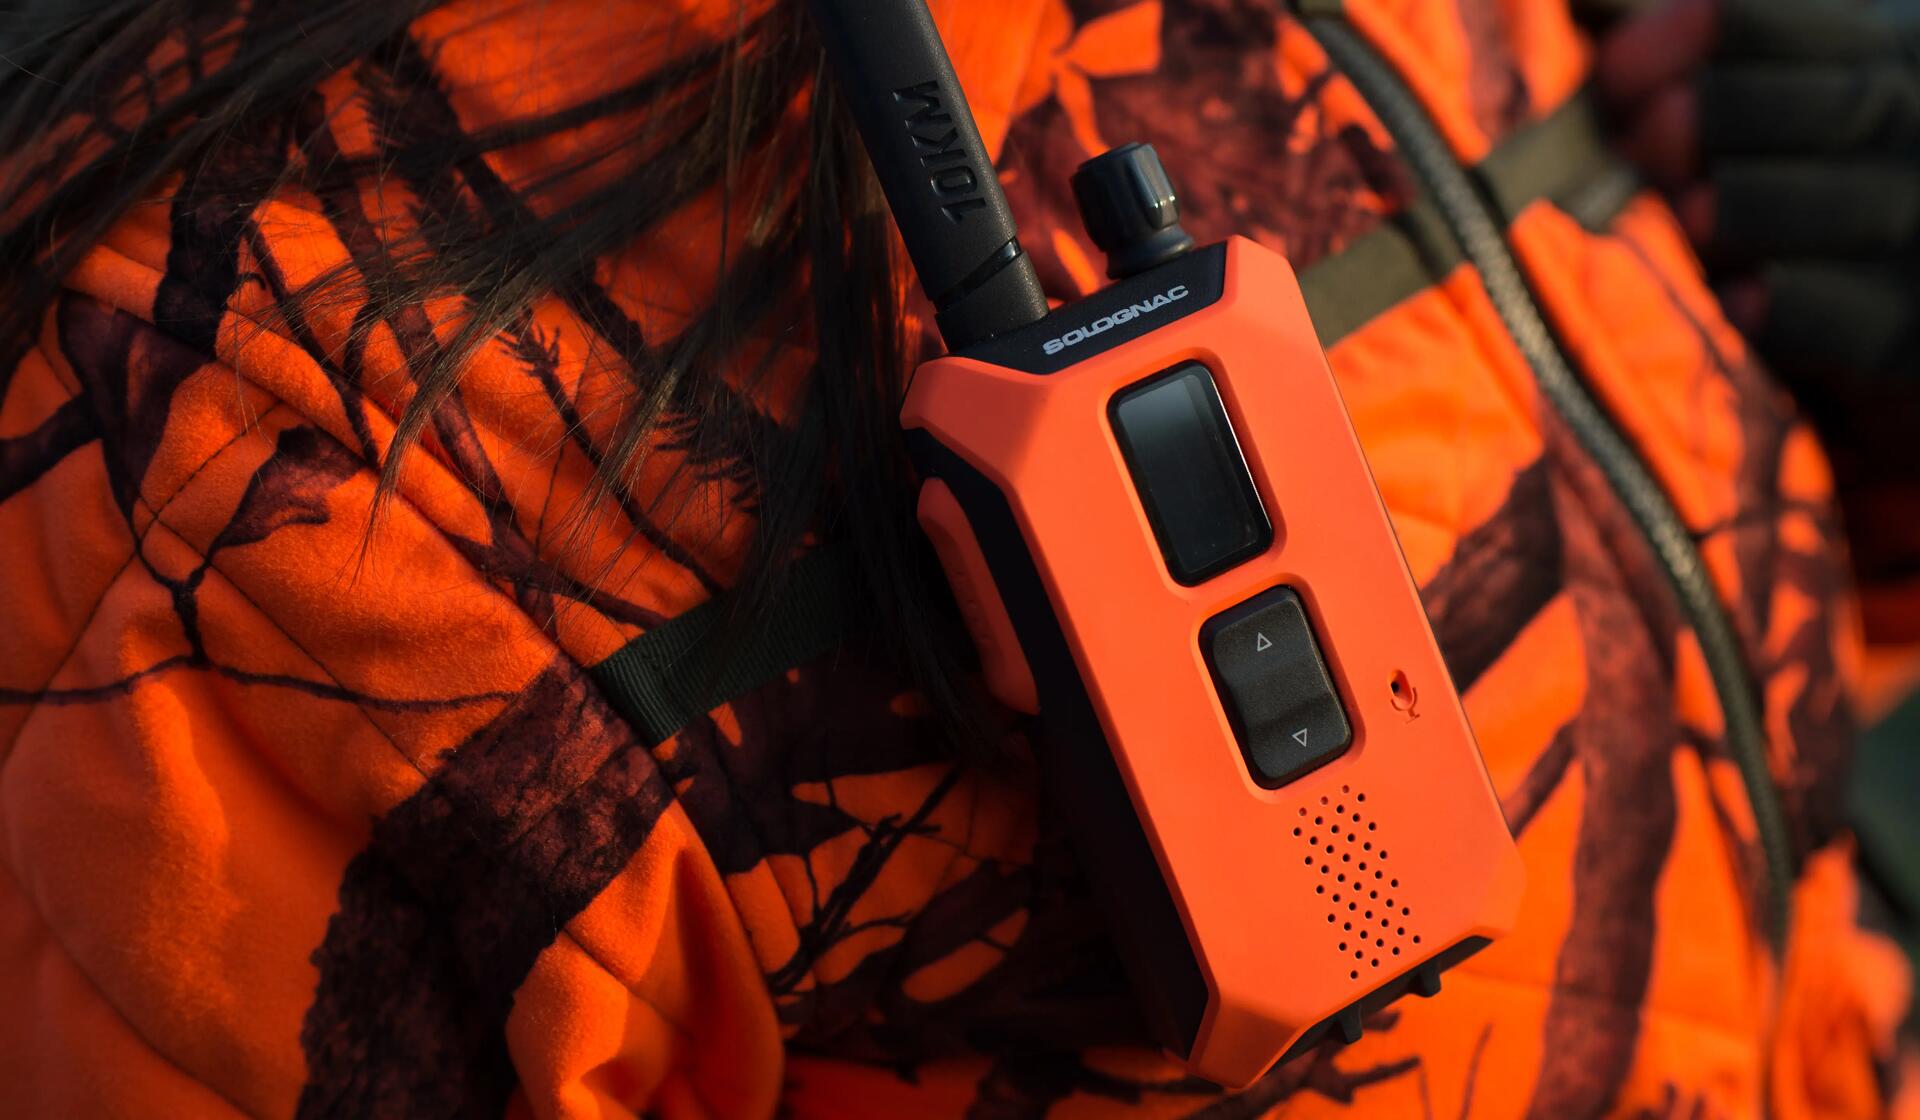 Talkie walkie de chasse étanche à la pluie portée 10 KM BGB 500.